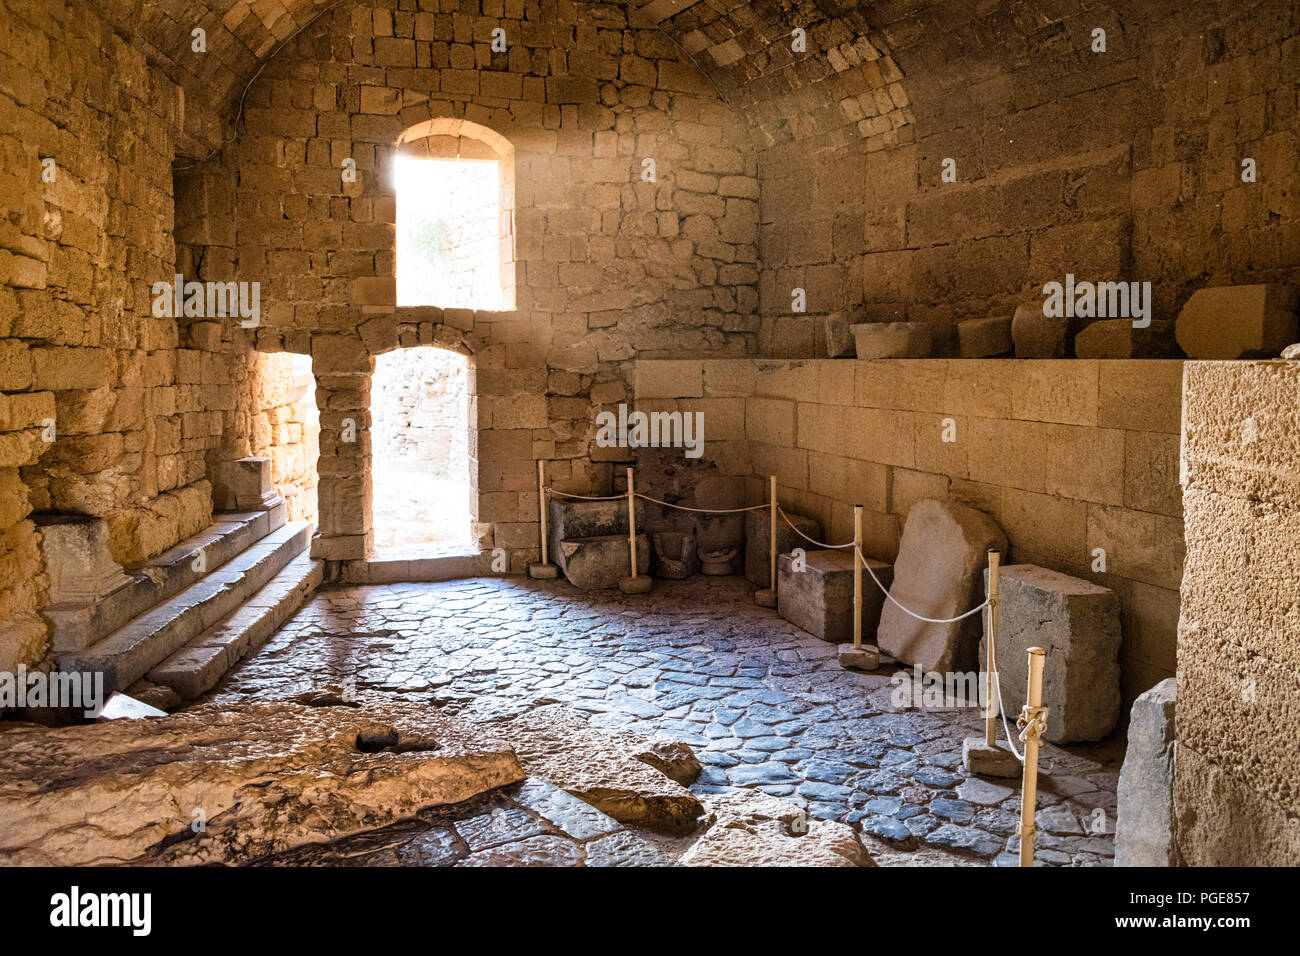 Das ist ein Bild von einer Kammer in einer mittelalterlichen Burg in Rhodos Griechenland. Das Licht strahlt in aus dem Stein Fenster eine sehr atmosphärische Szene schafft. Stockfoto